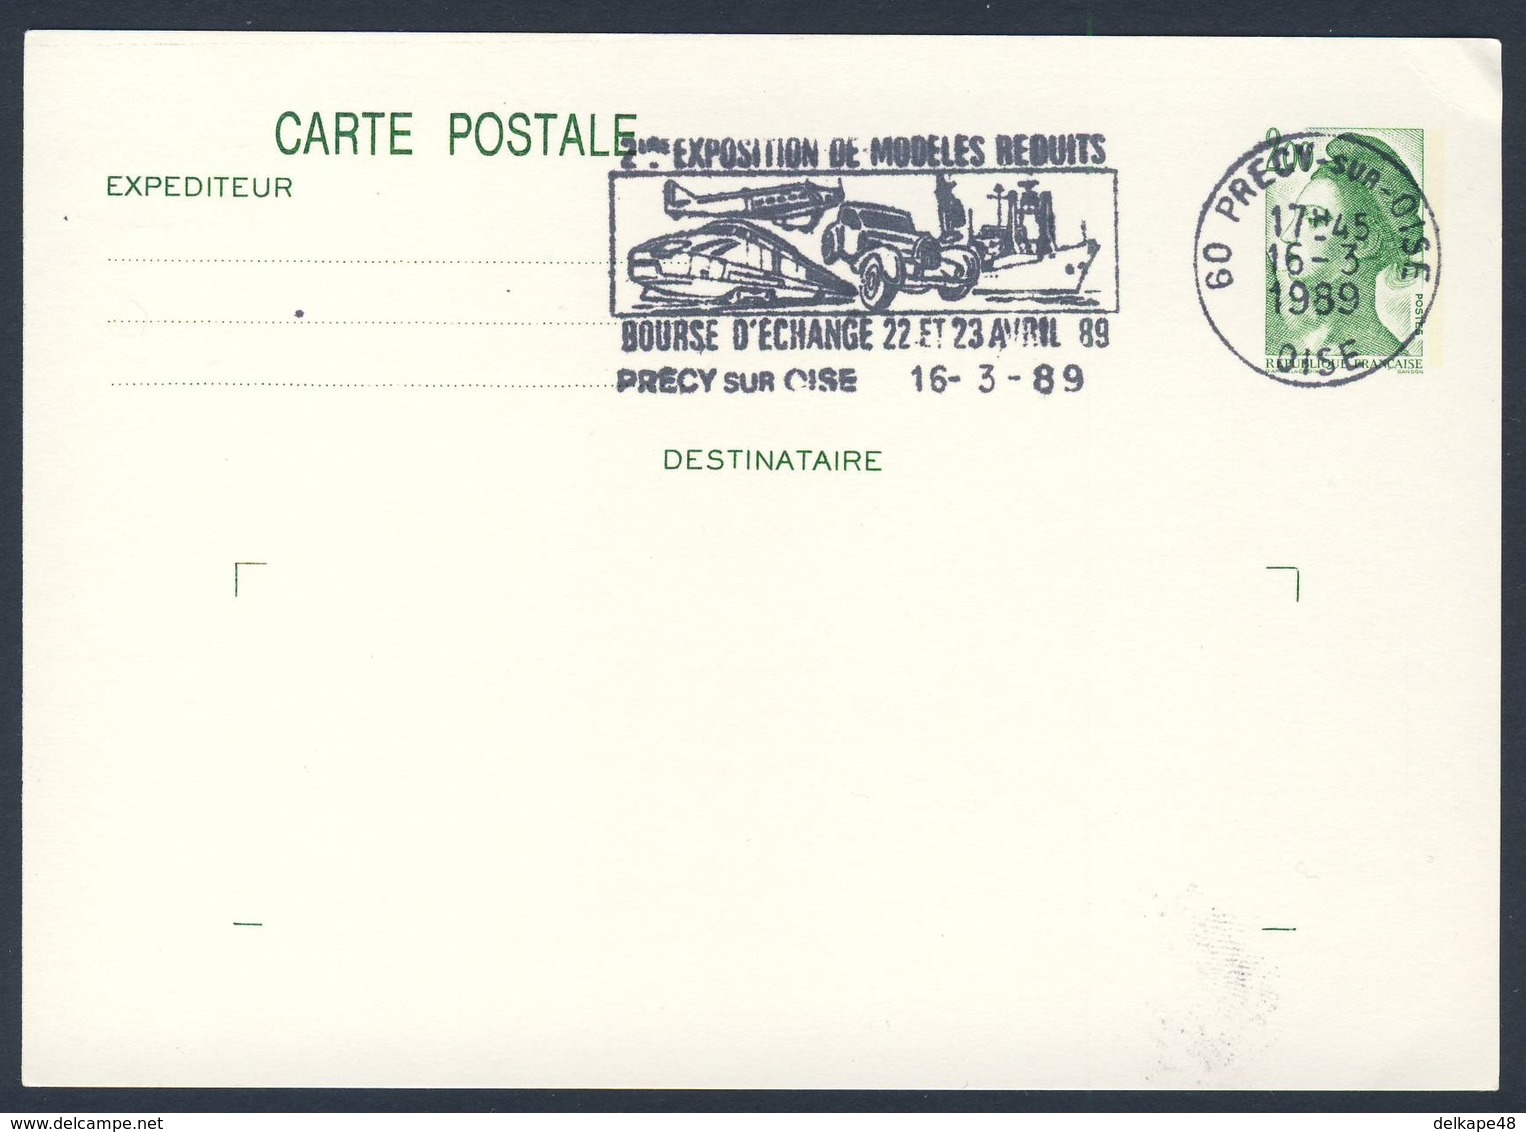 France Rep. Française 1989 Card Karte Carte - 2e Exp. Modeles Reduits, Bourse D'Echange, Précy Sur Oise / Ausstellung - Eisenbahnen